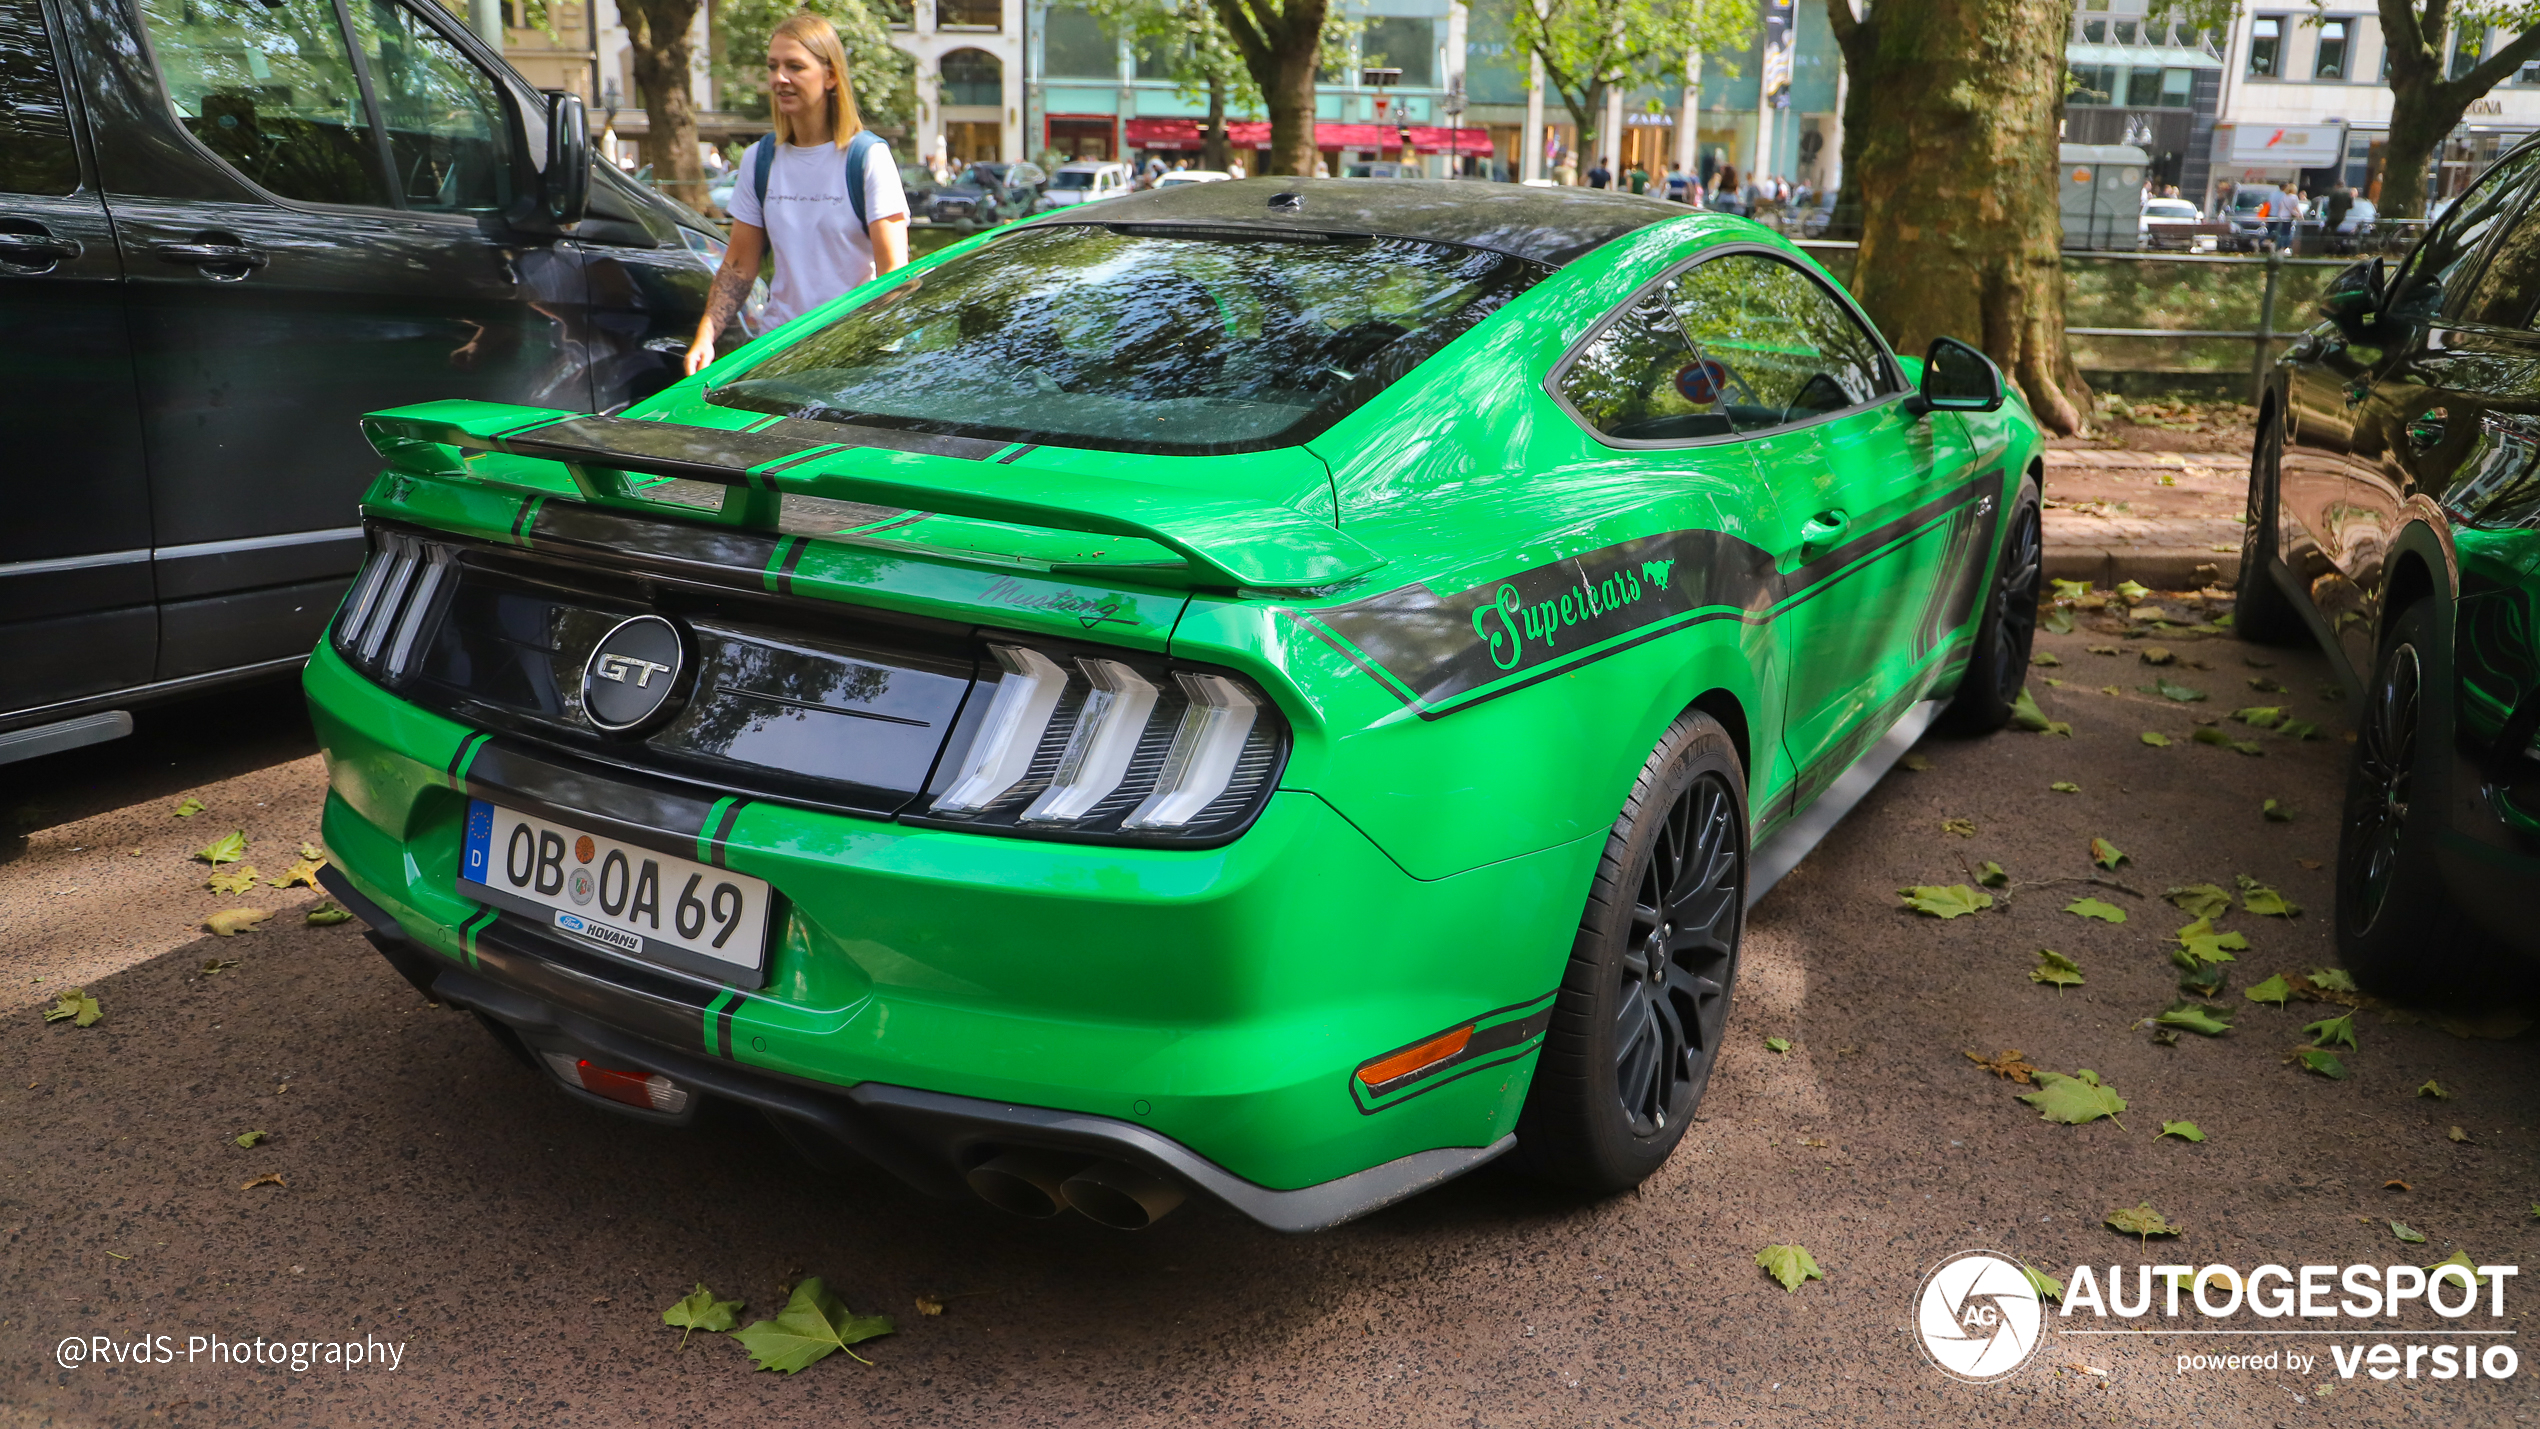 Groene Ford Mustang heeft een gekke stance